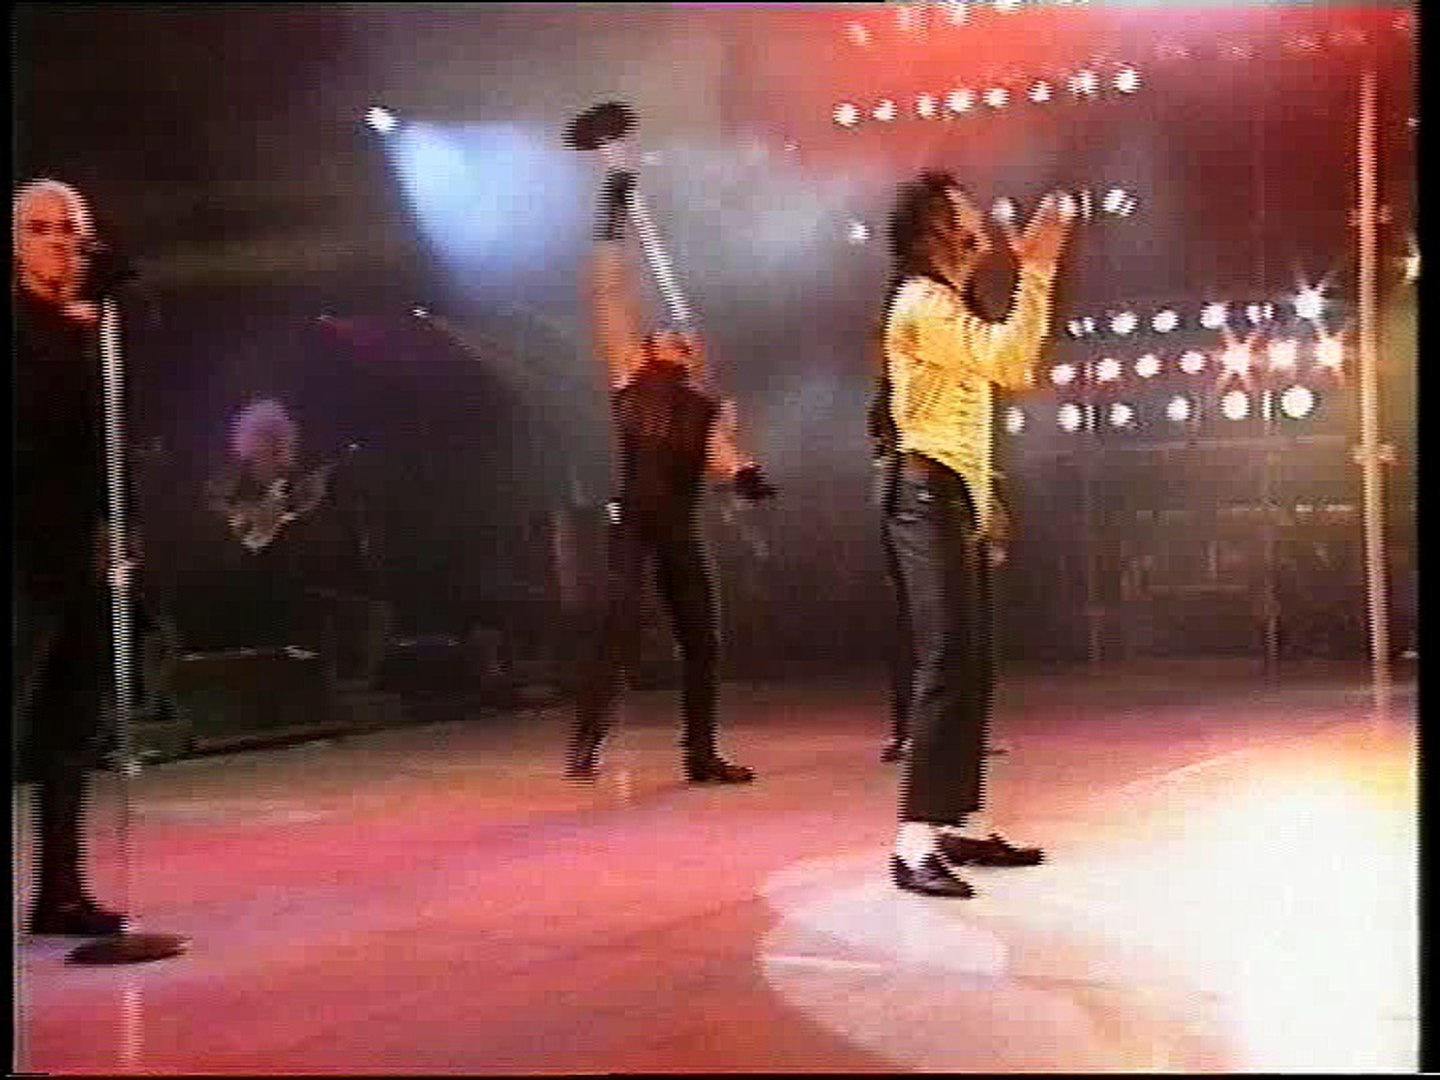 Michael Jackson Dangerous World Tour Bucharest c Version Hq Part 2 Video Dailymotion